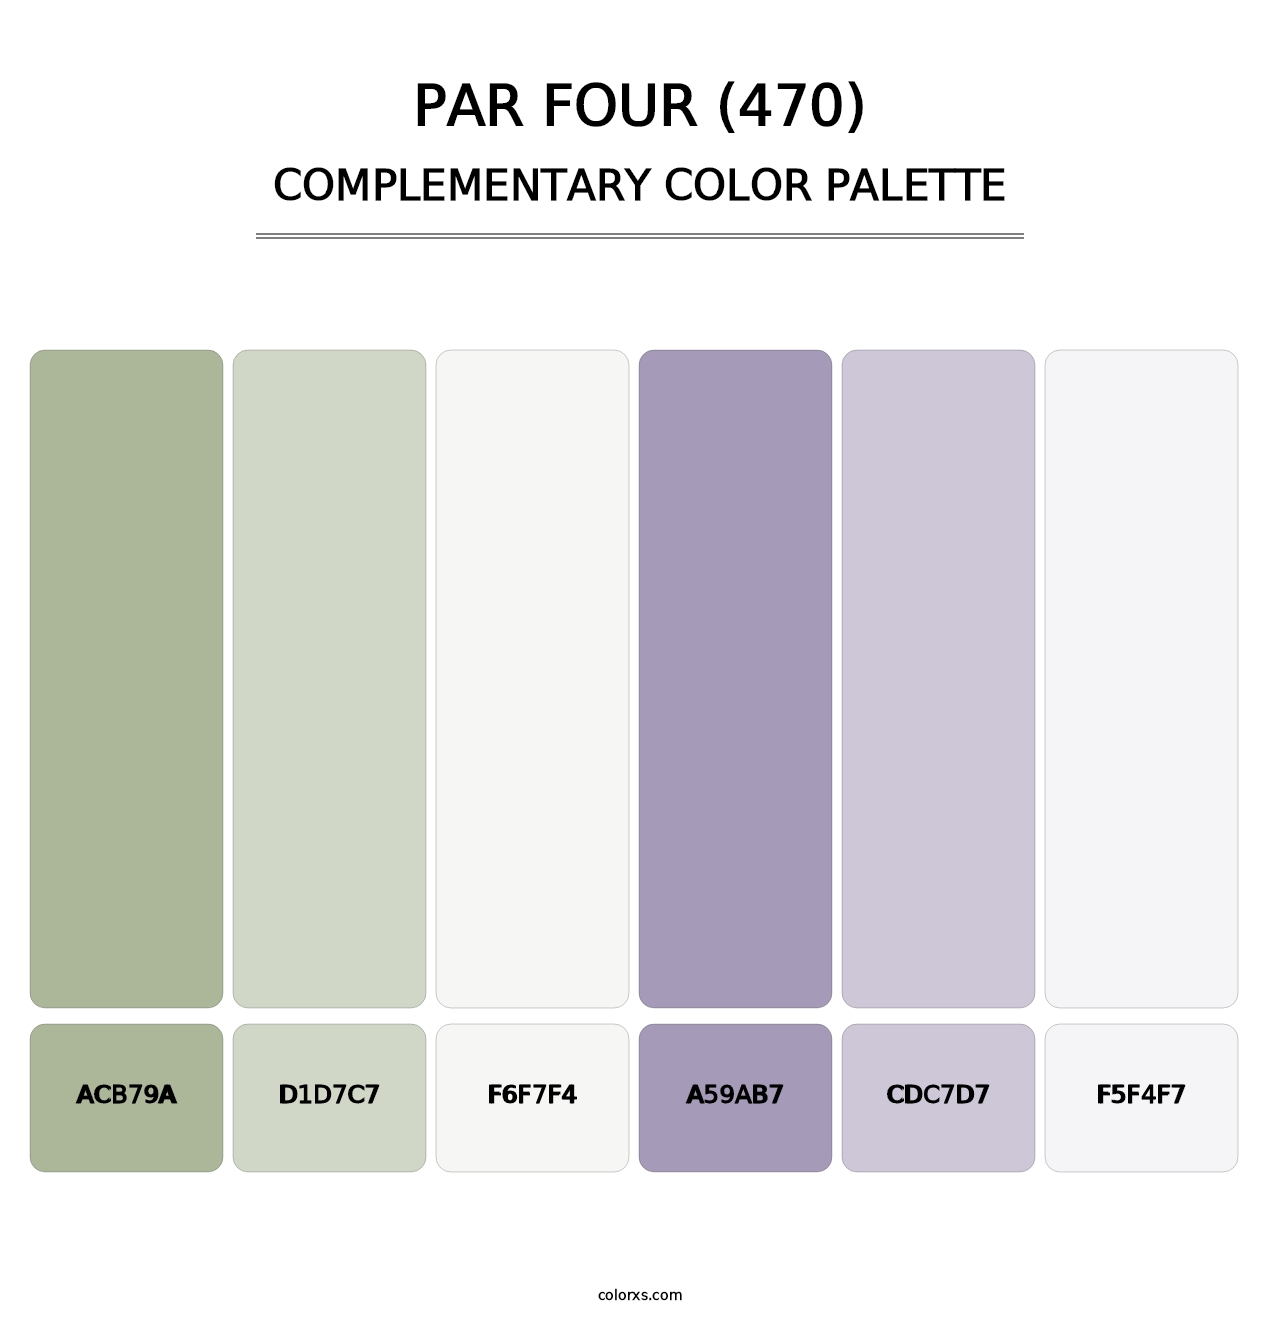 Par Four (470) - Complementary Color Palette